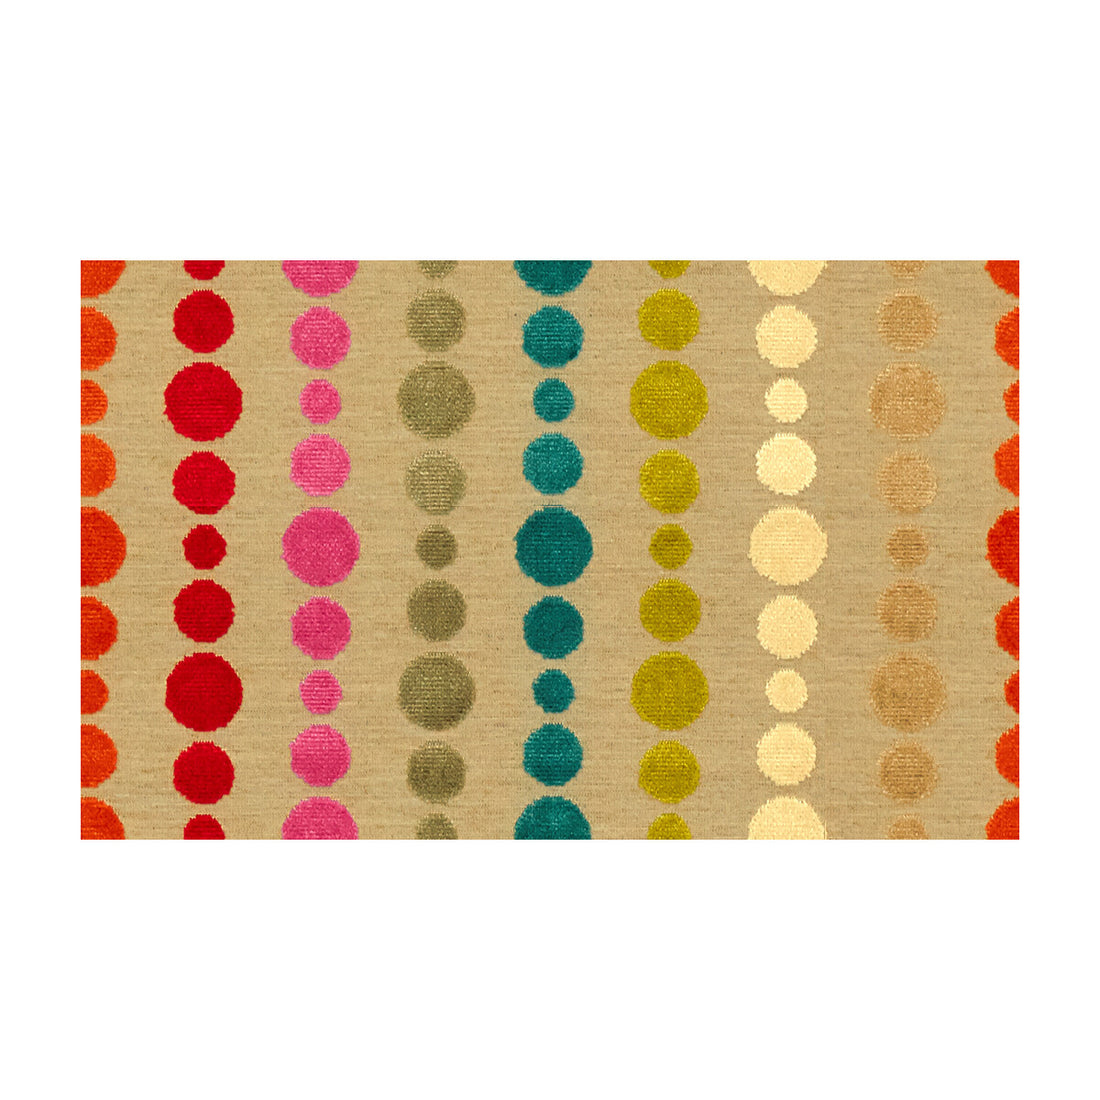 Kravet Design fabric in 30177-712 color - pattern 30177.712.0 - by Kravet Design